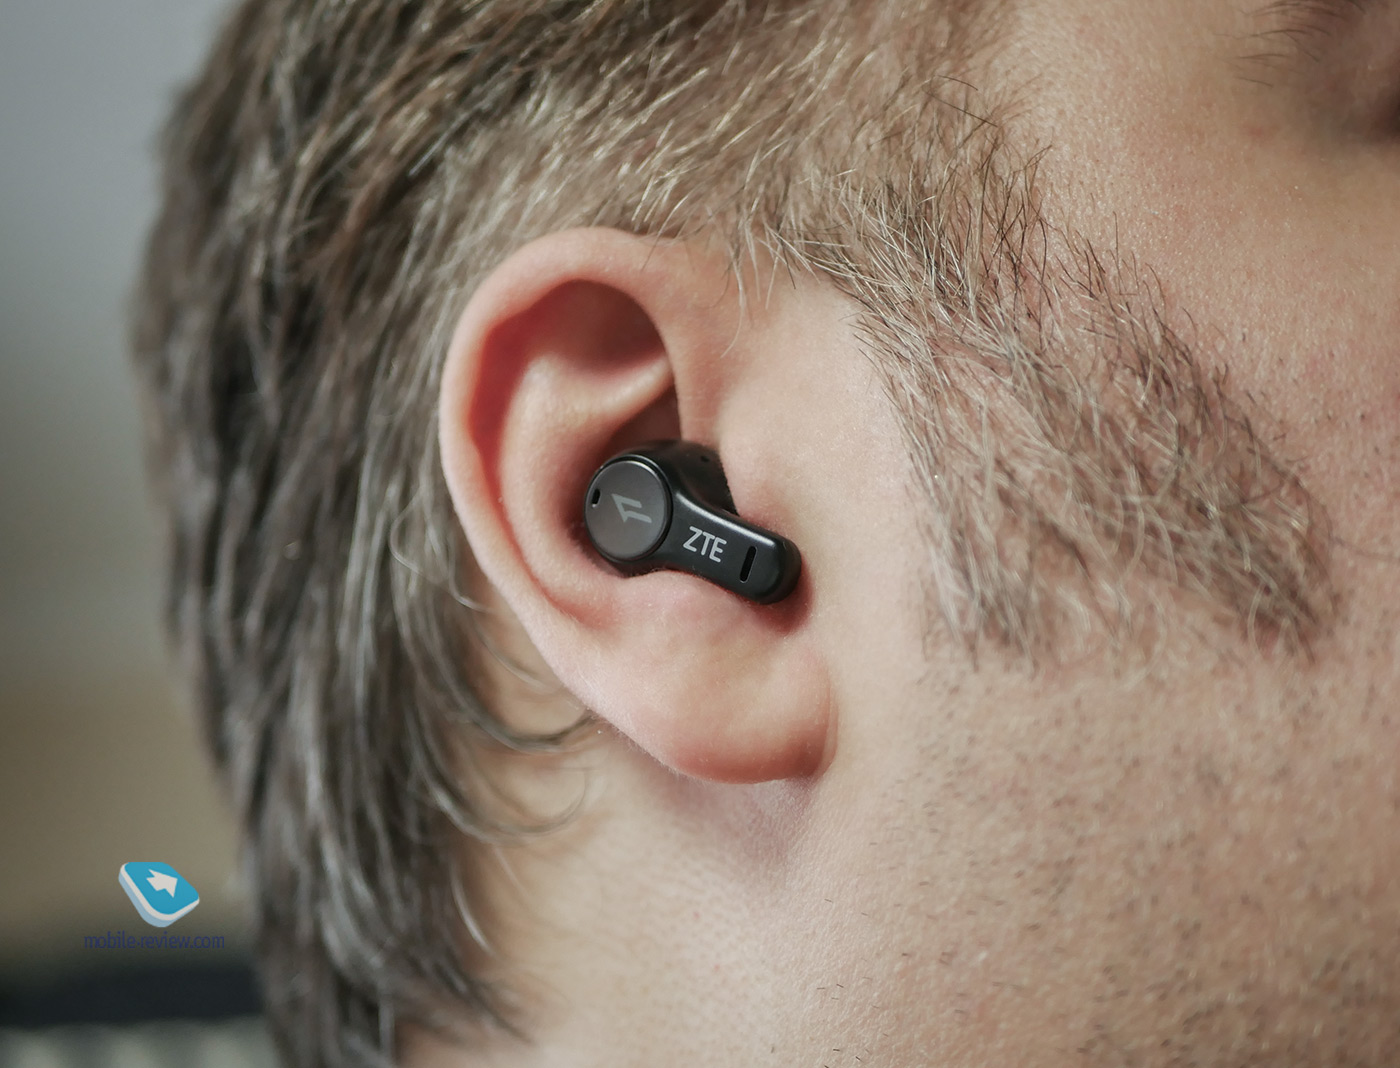 Review of TWS headphones ZTE LiveBuds